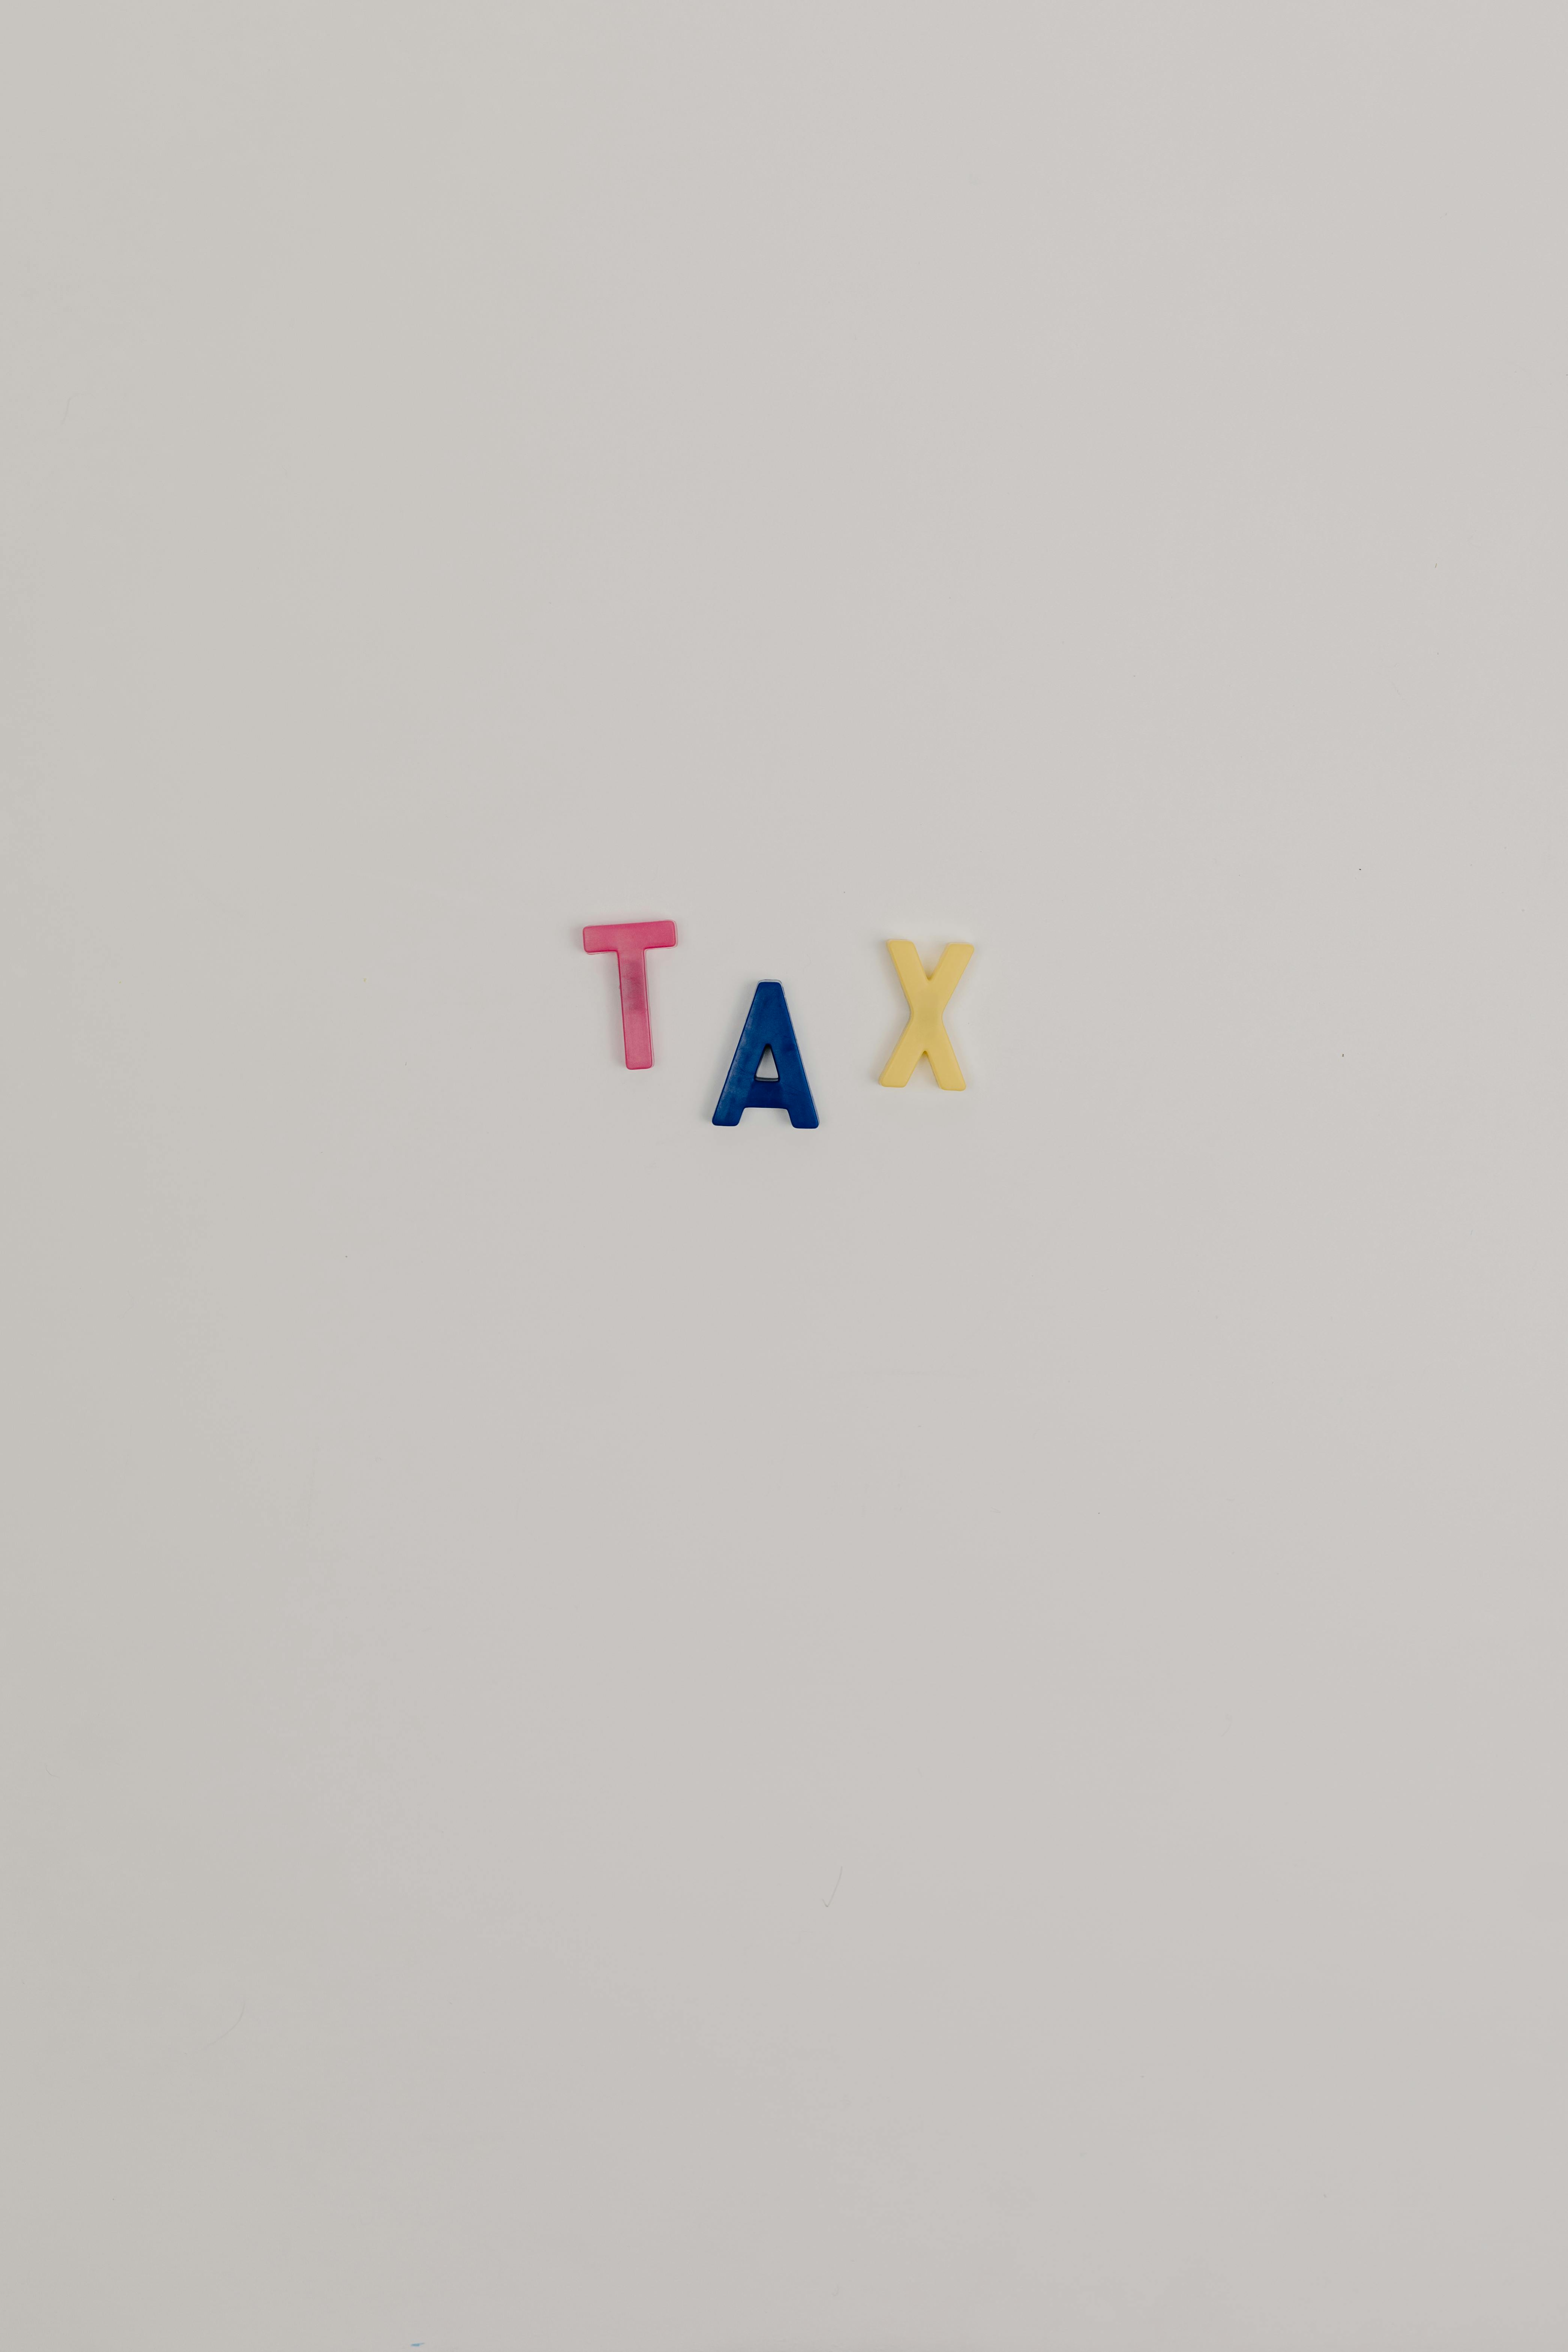 tax plastic letters